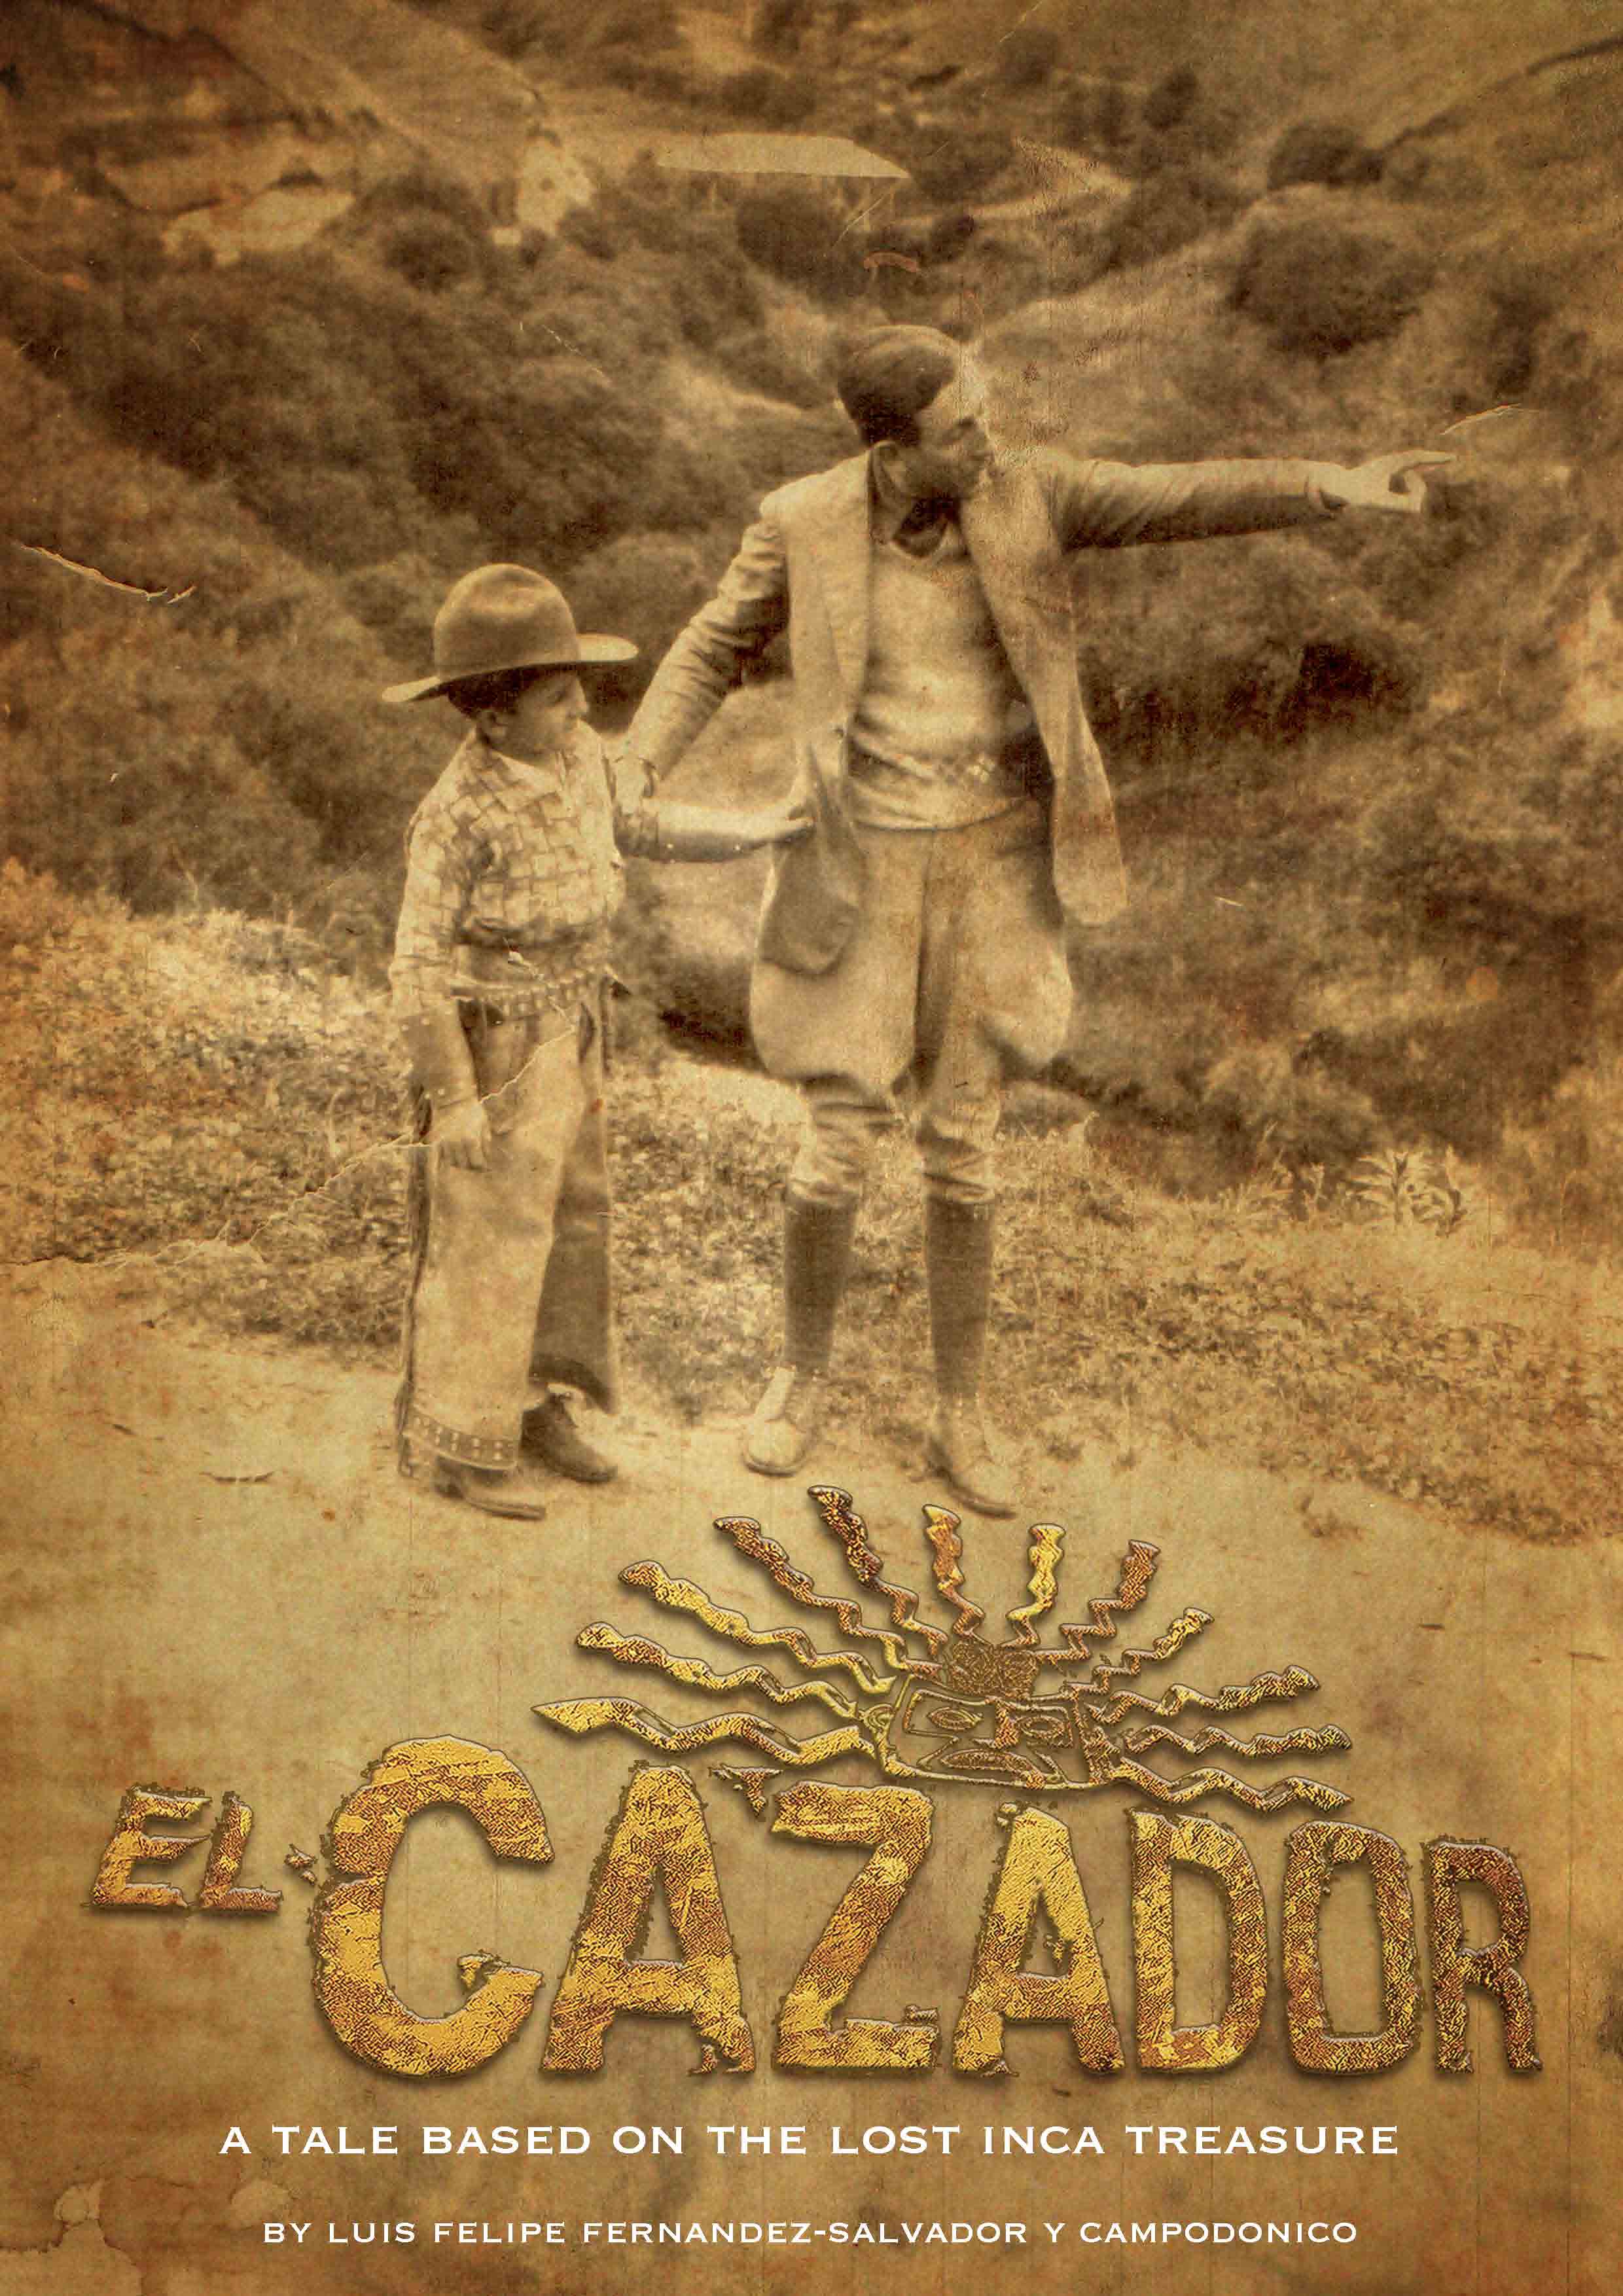 El Cazador the movie poster